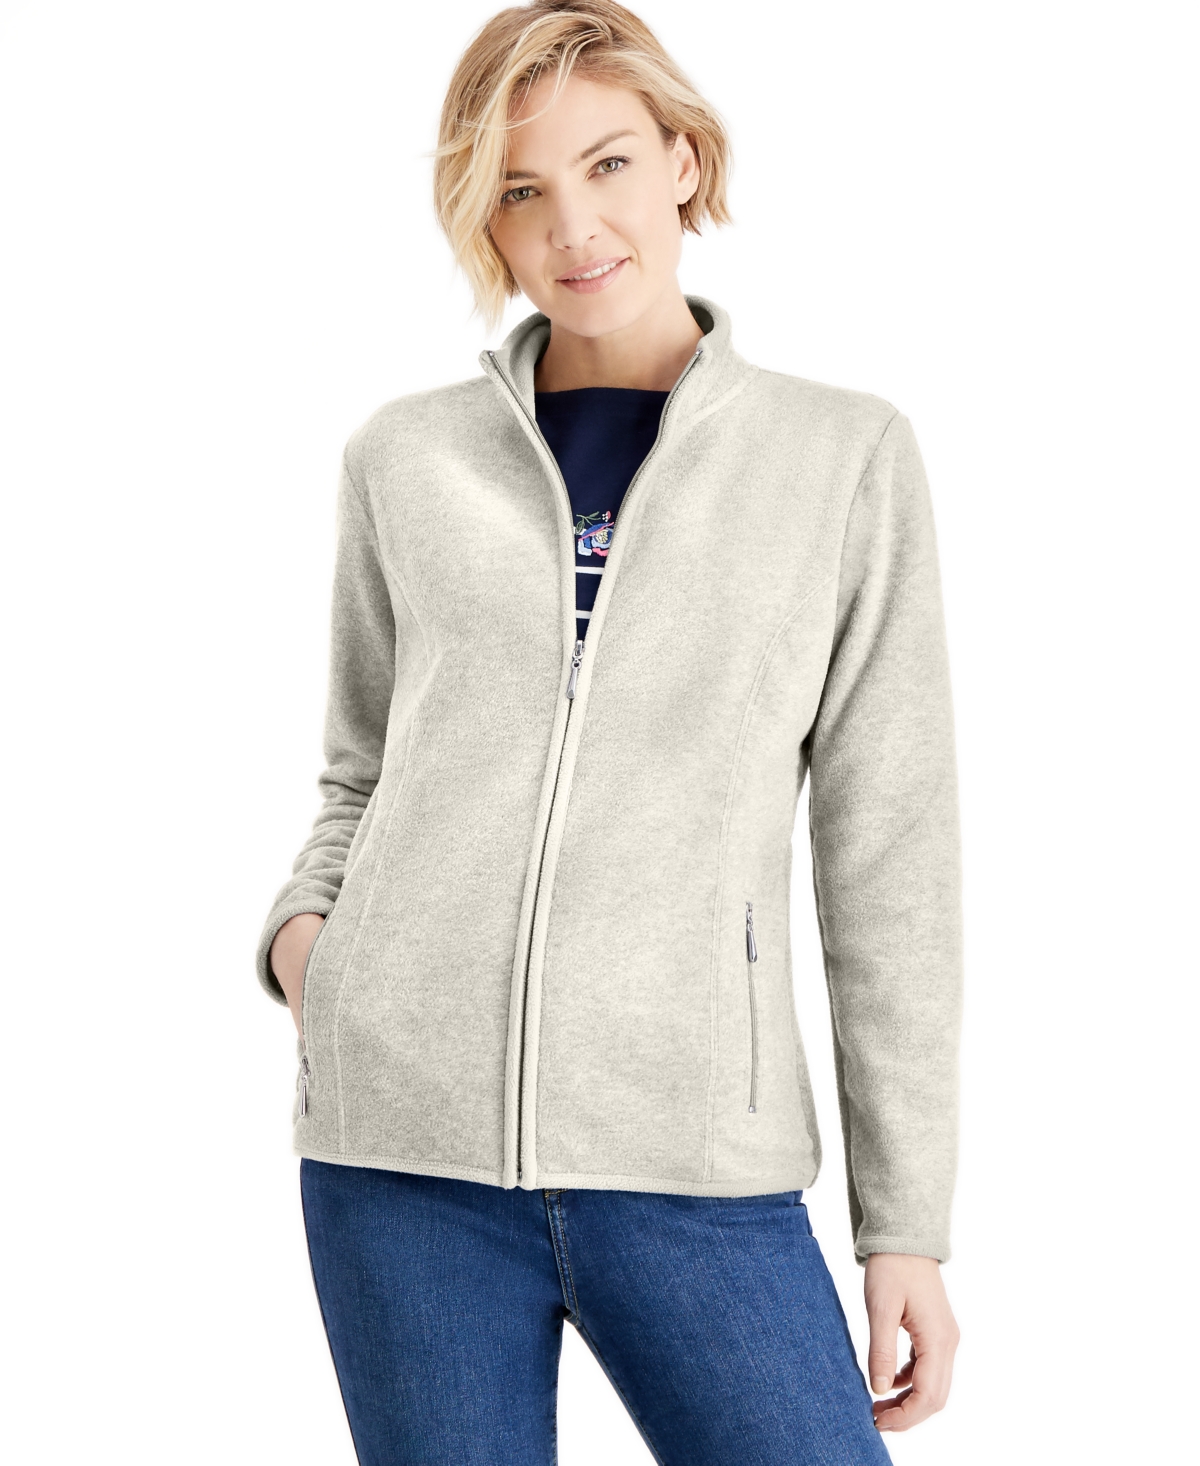 Women's Zip-Up Zeroproof Fleece Jacket, Created for Macy's - Neo Natural